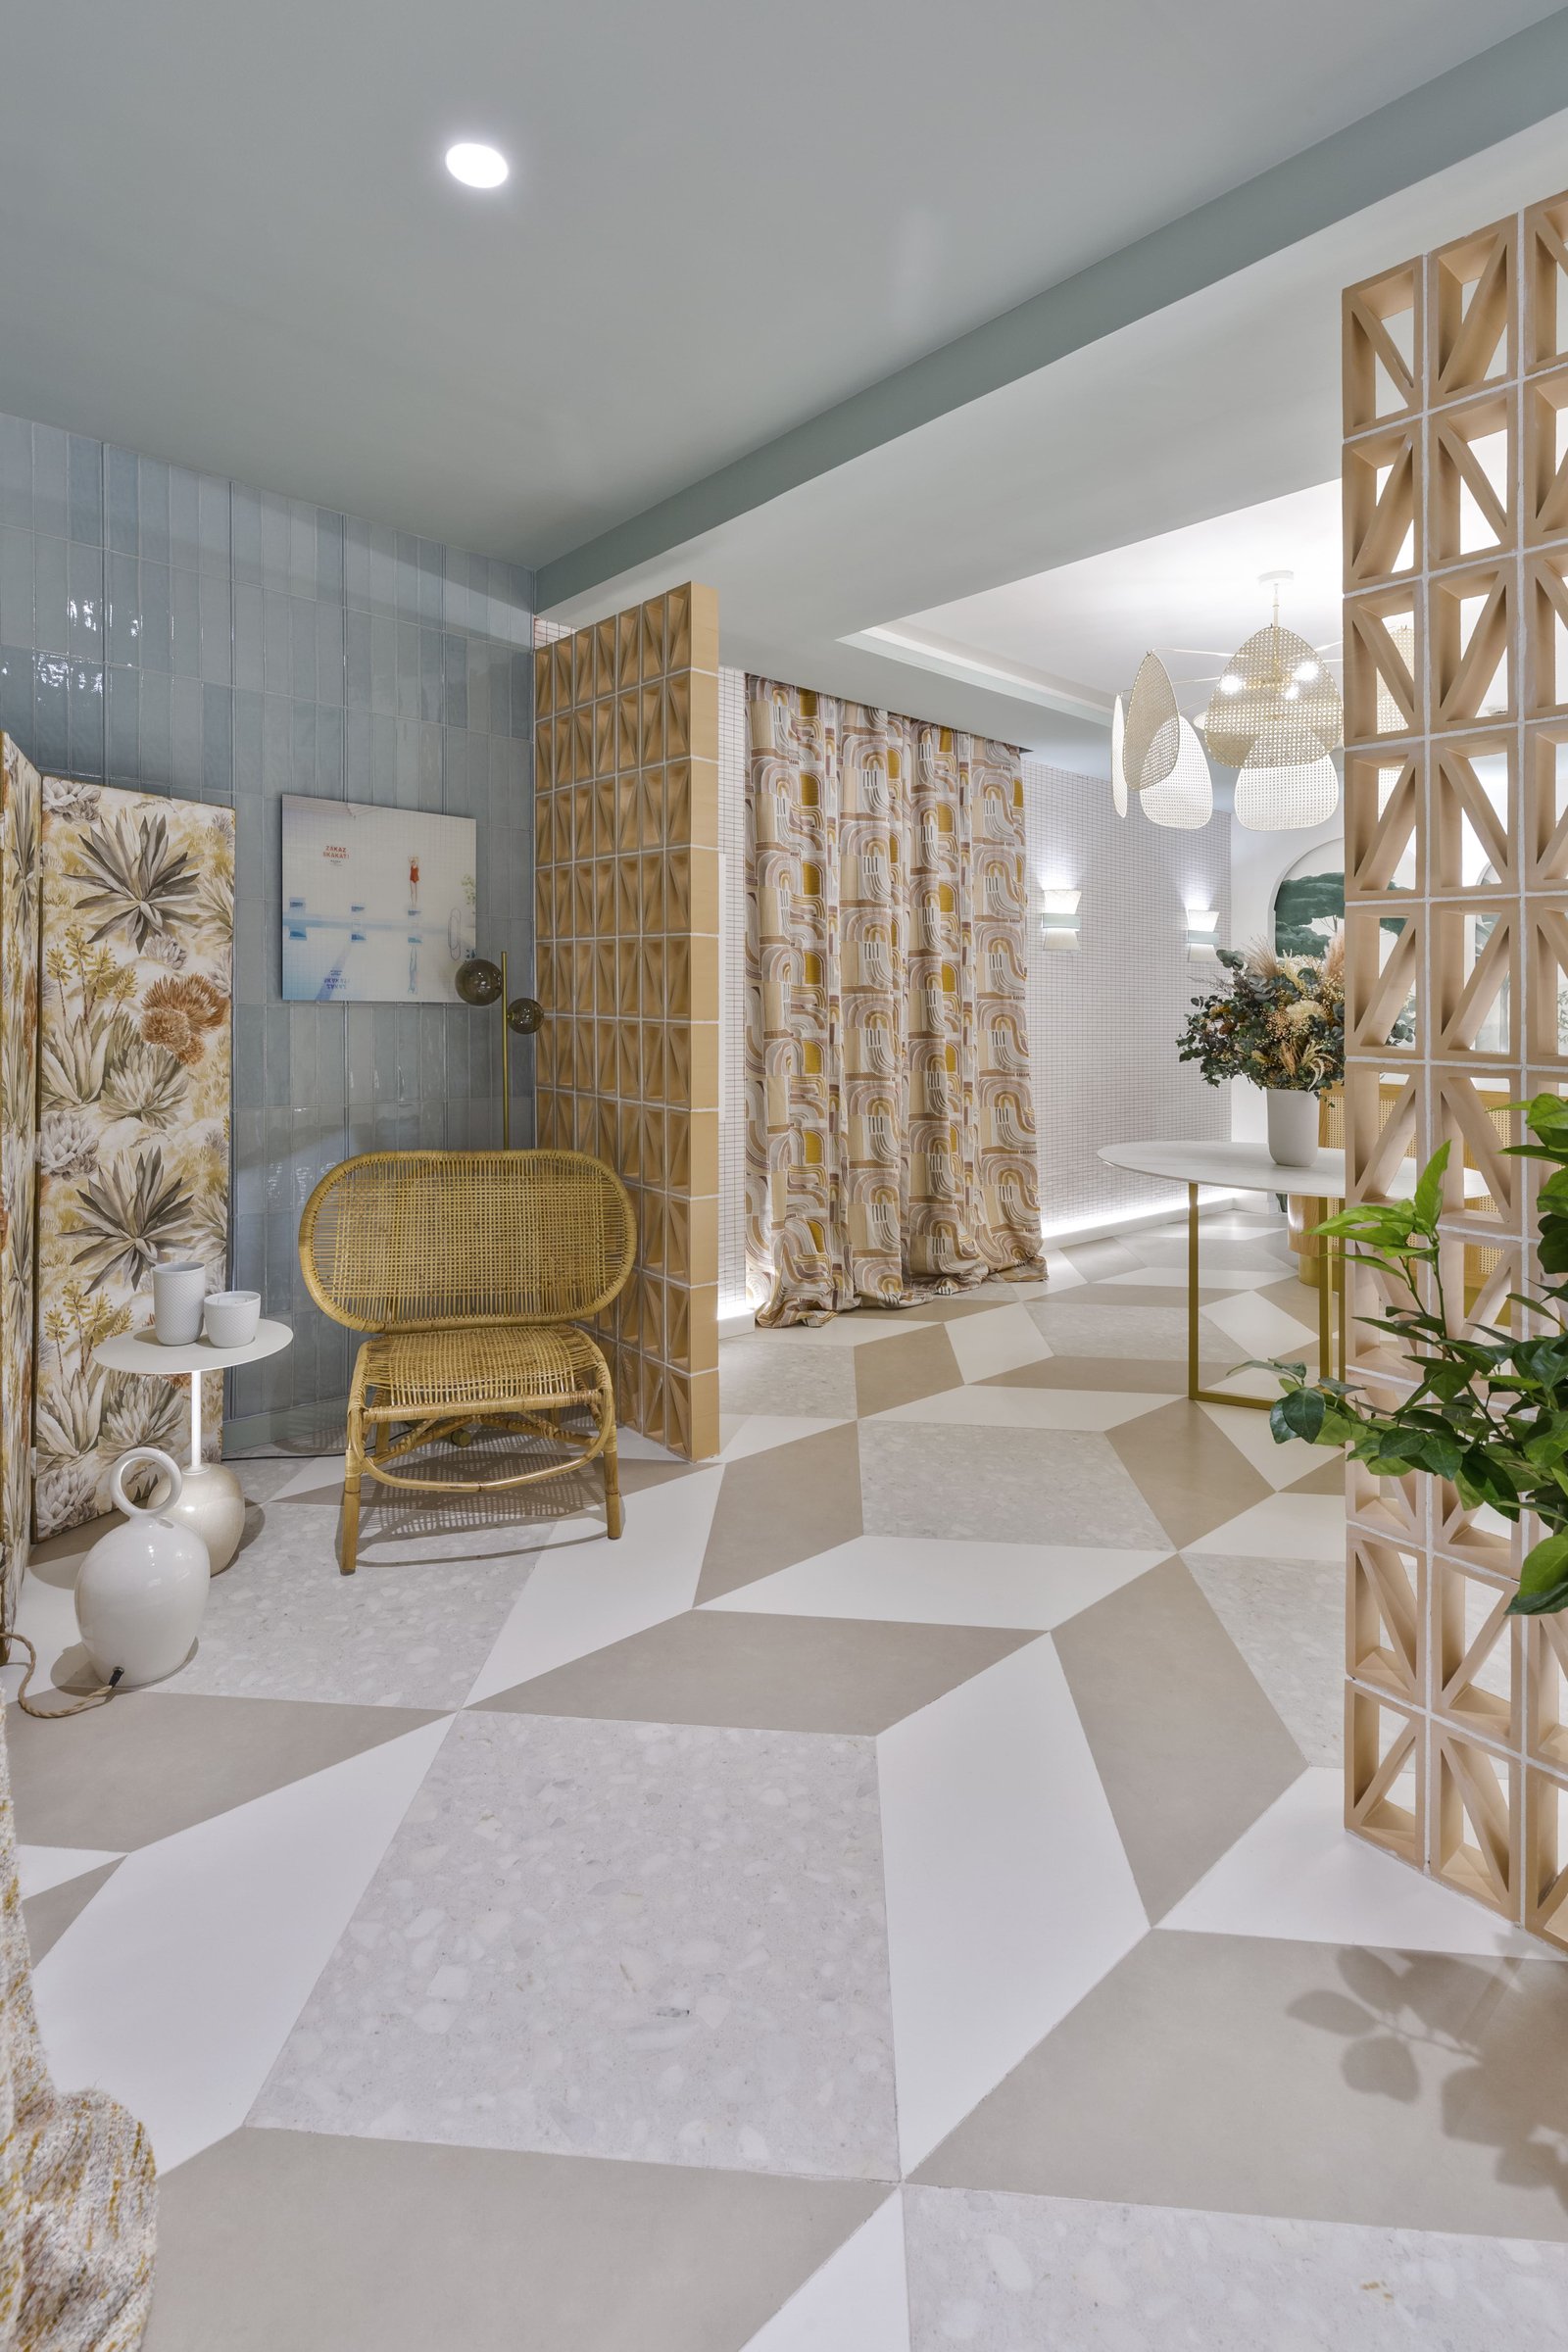 Casa Decor 2020 - Fotografías de alta calidad del proyecto de decoración de interiores Casa Decor 2020